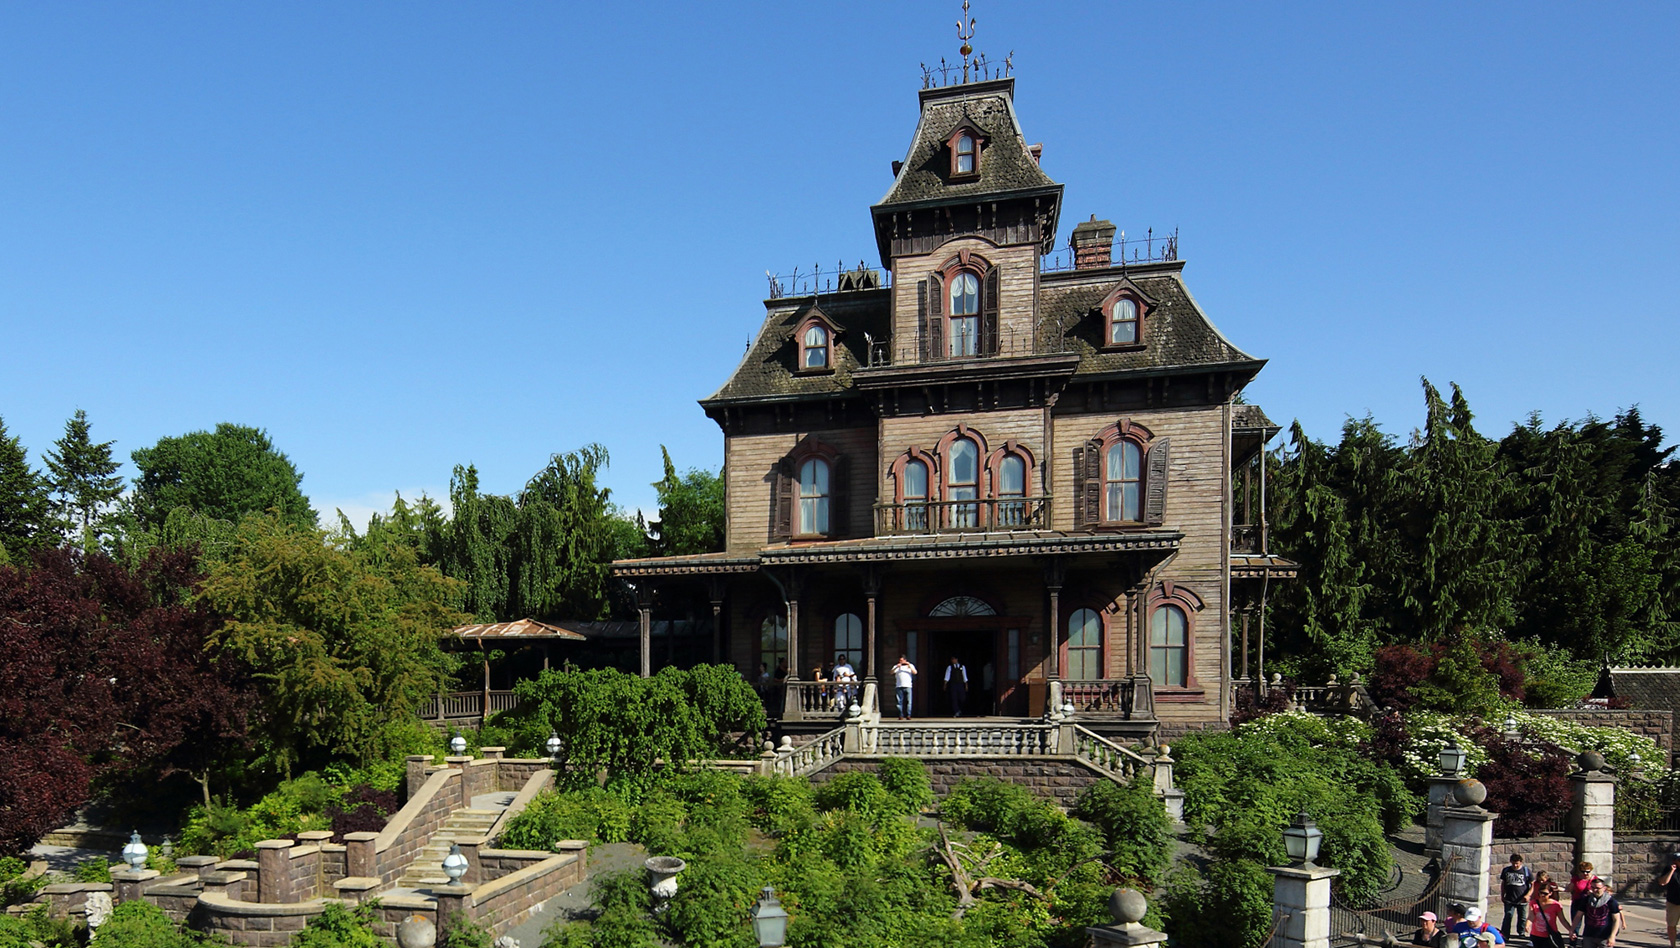 Disneyland Paris Gruselhaus Phantom Manor